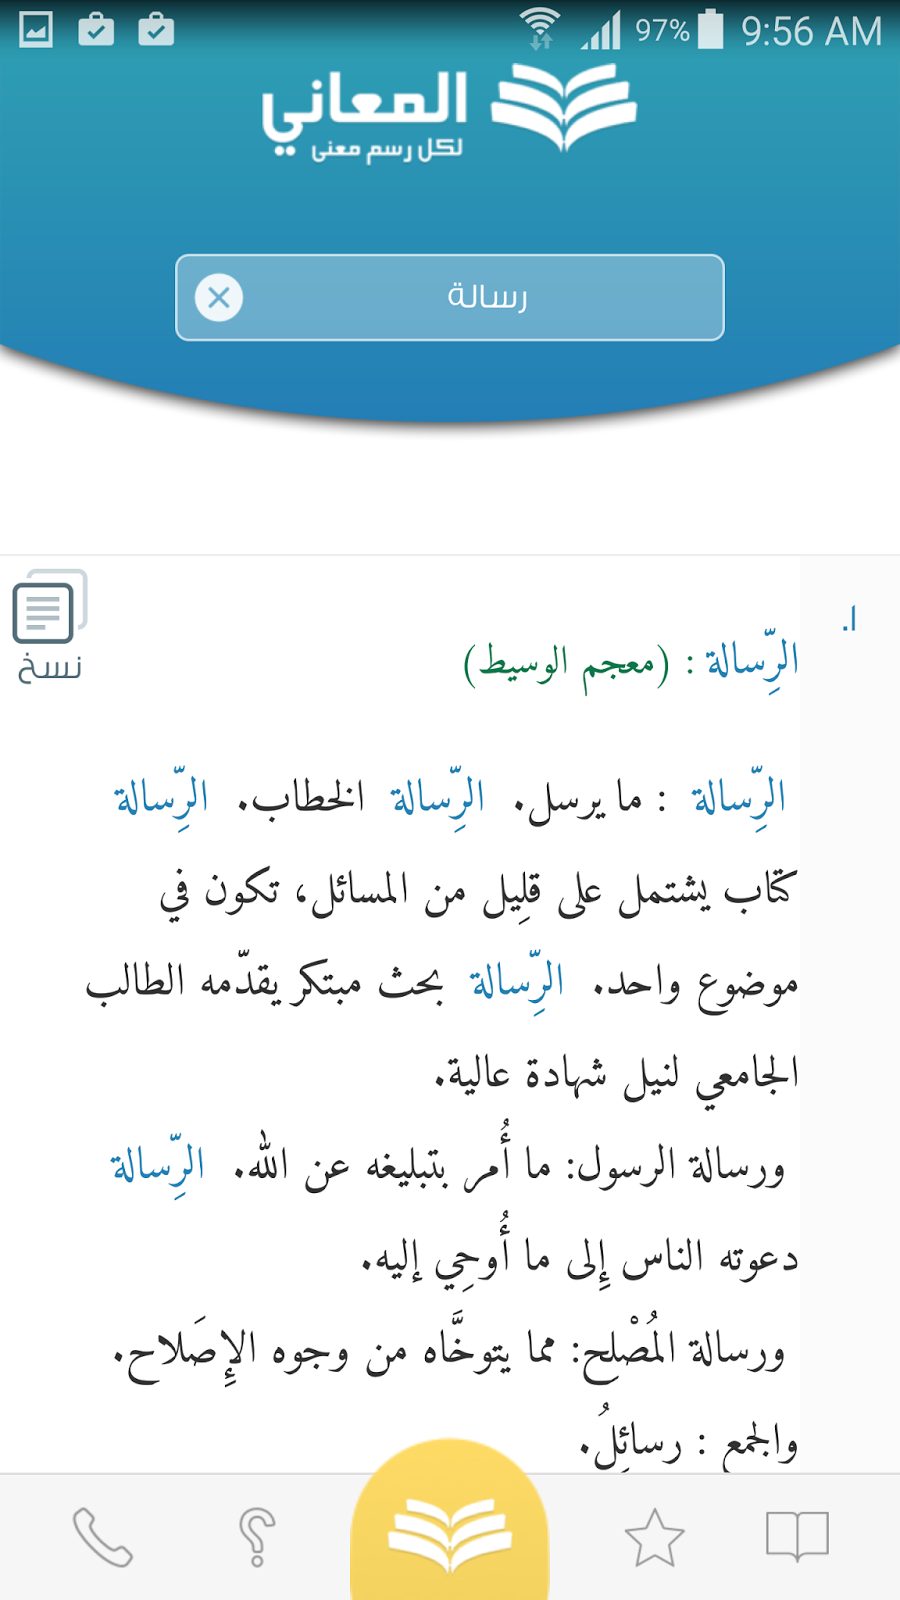 تطبيق المعاني قاموس بدون انترنت للترجمة من الانجليزية الى العربية والعديد من اللغات | بحرية درويد